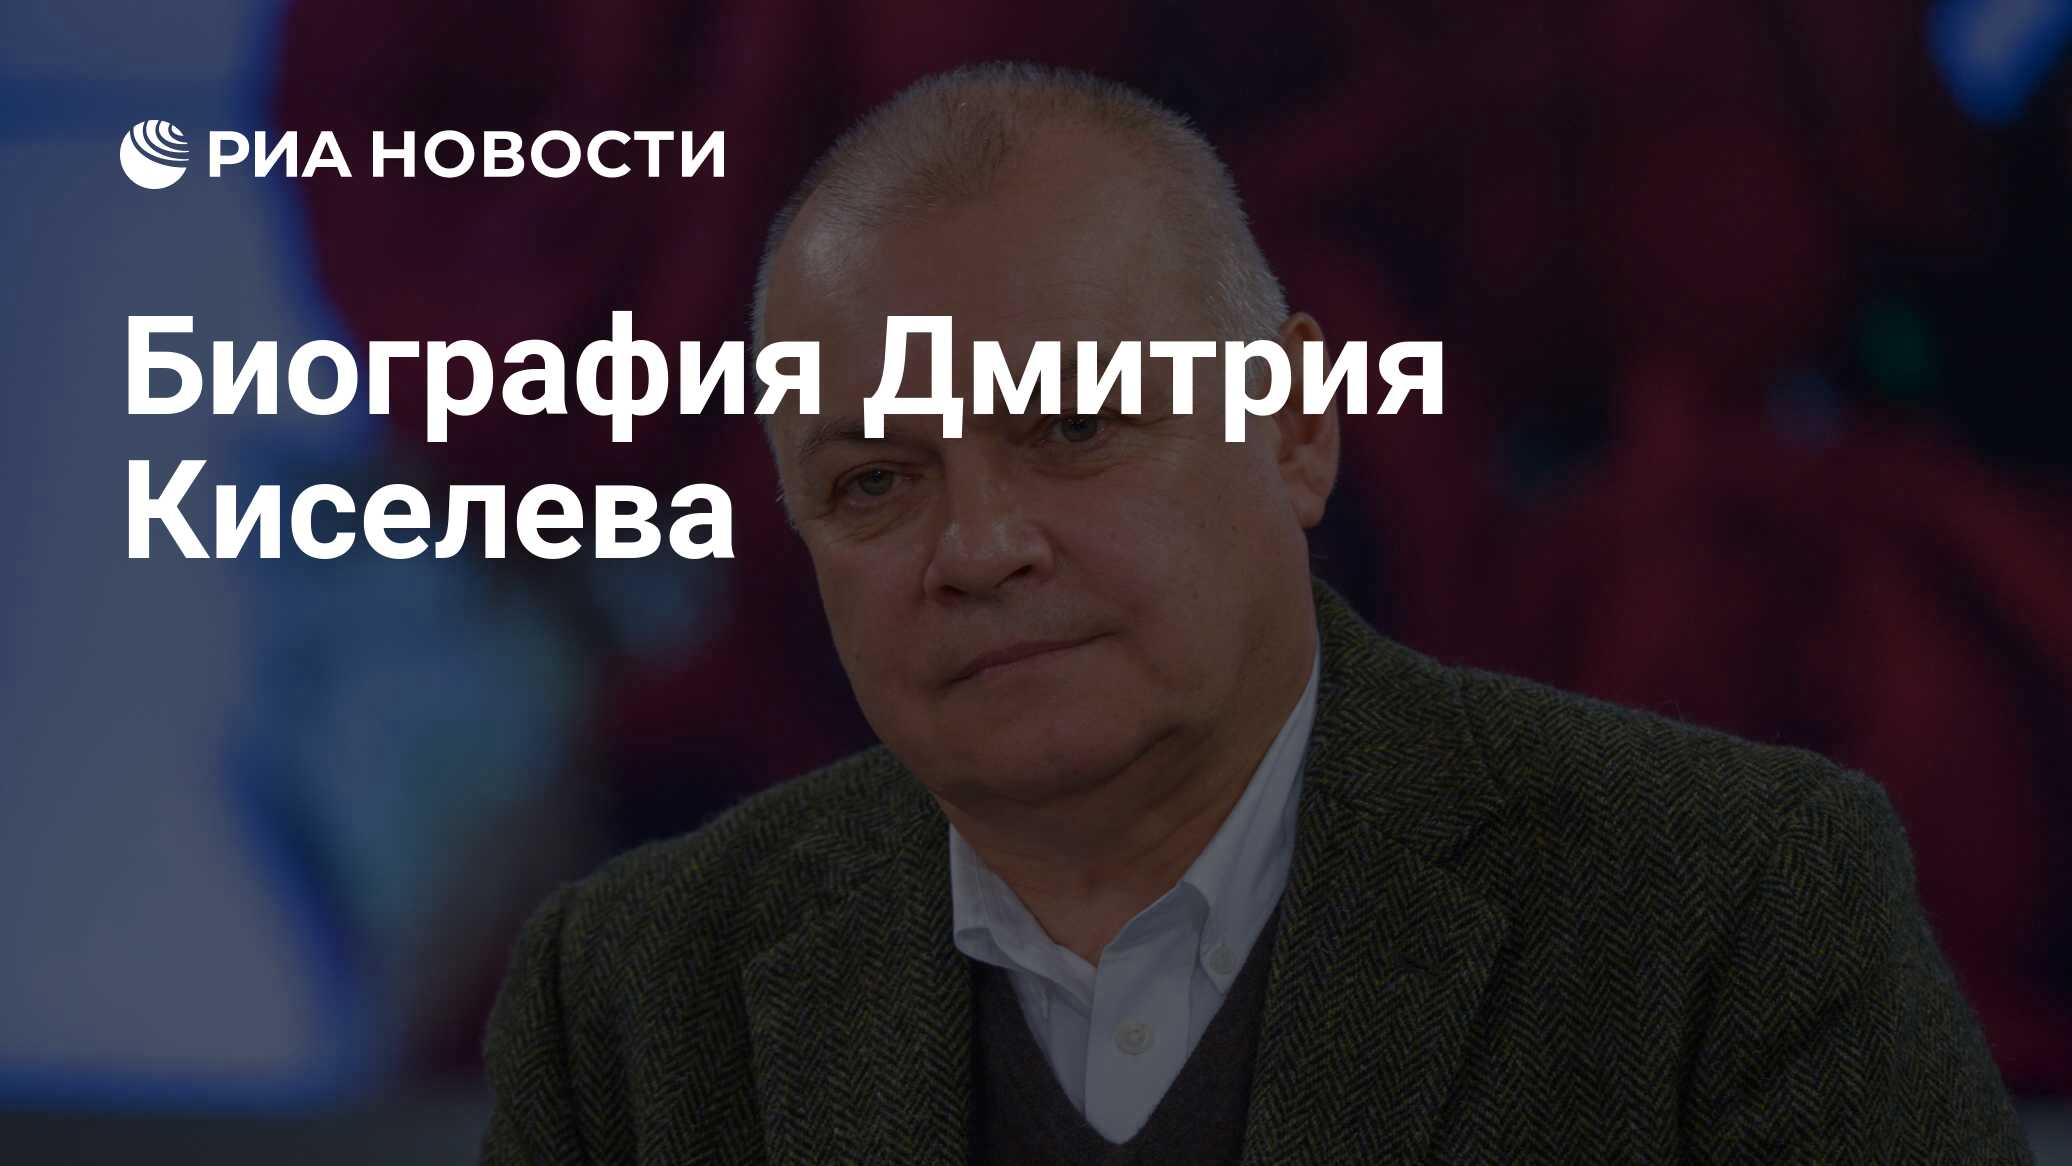 Биография Дмитрия Киселева - РИА Новости, 01.03.2020